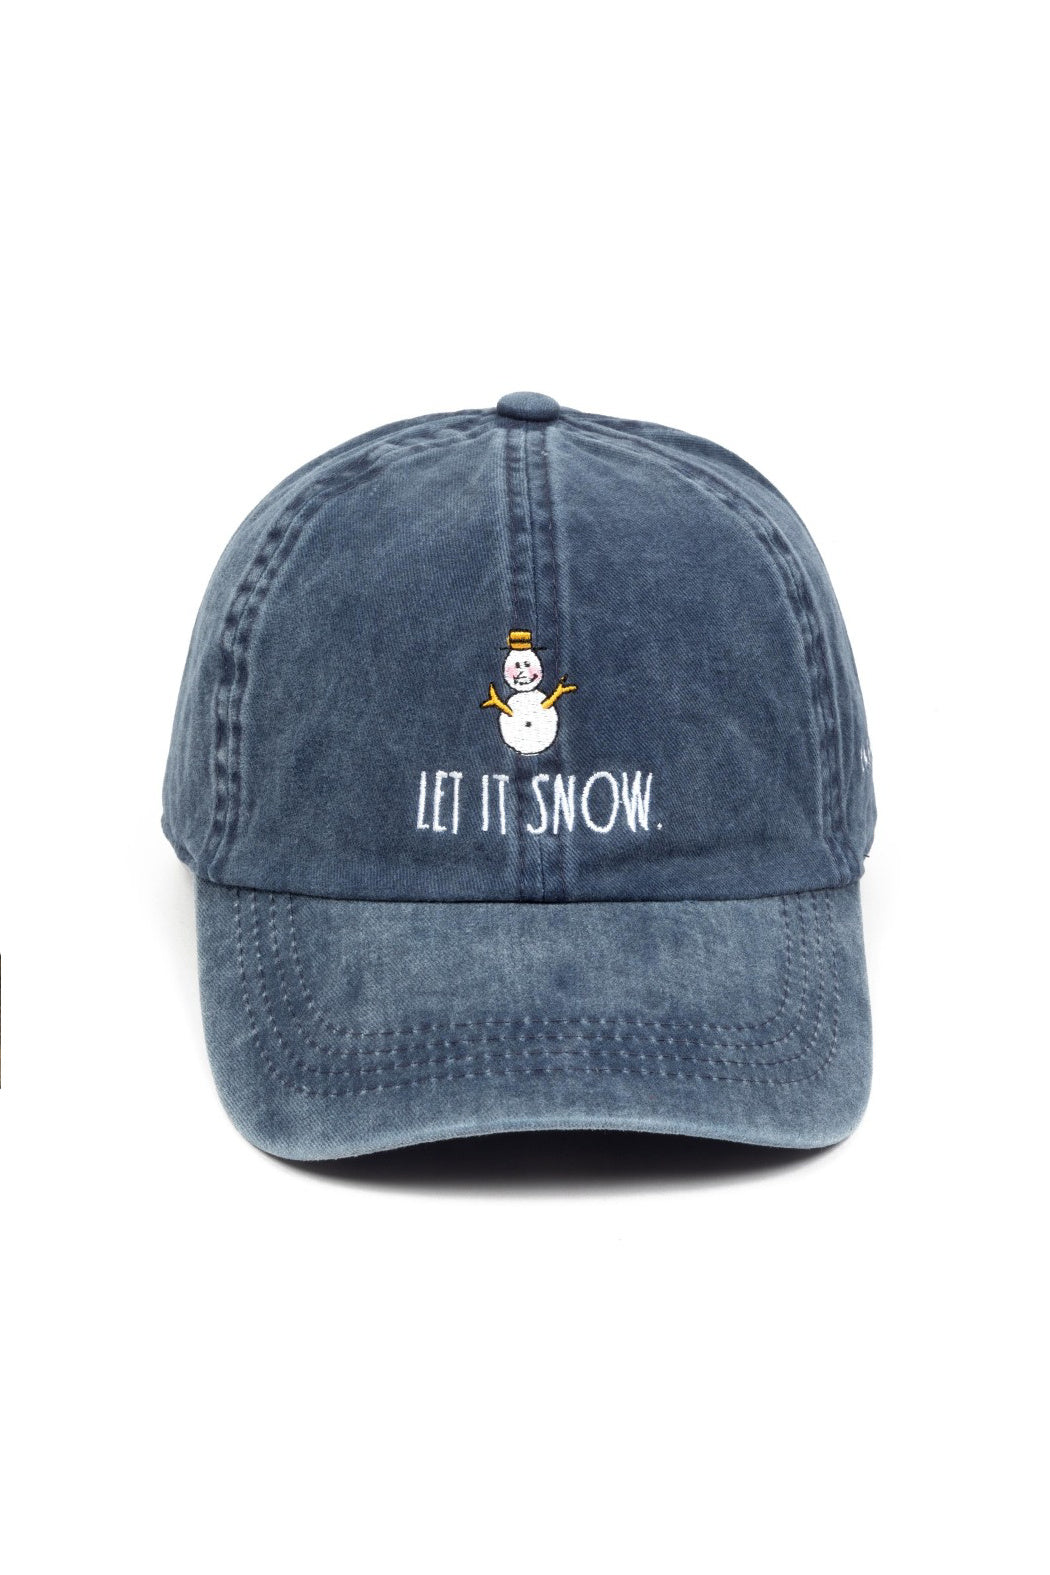 Let It Snow Cap